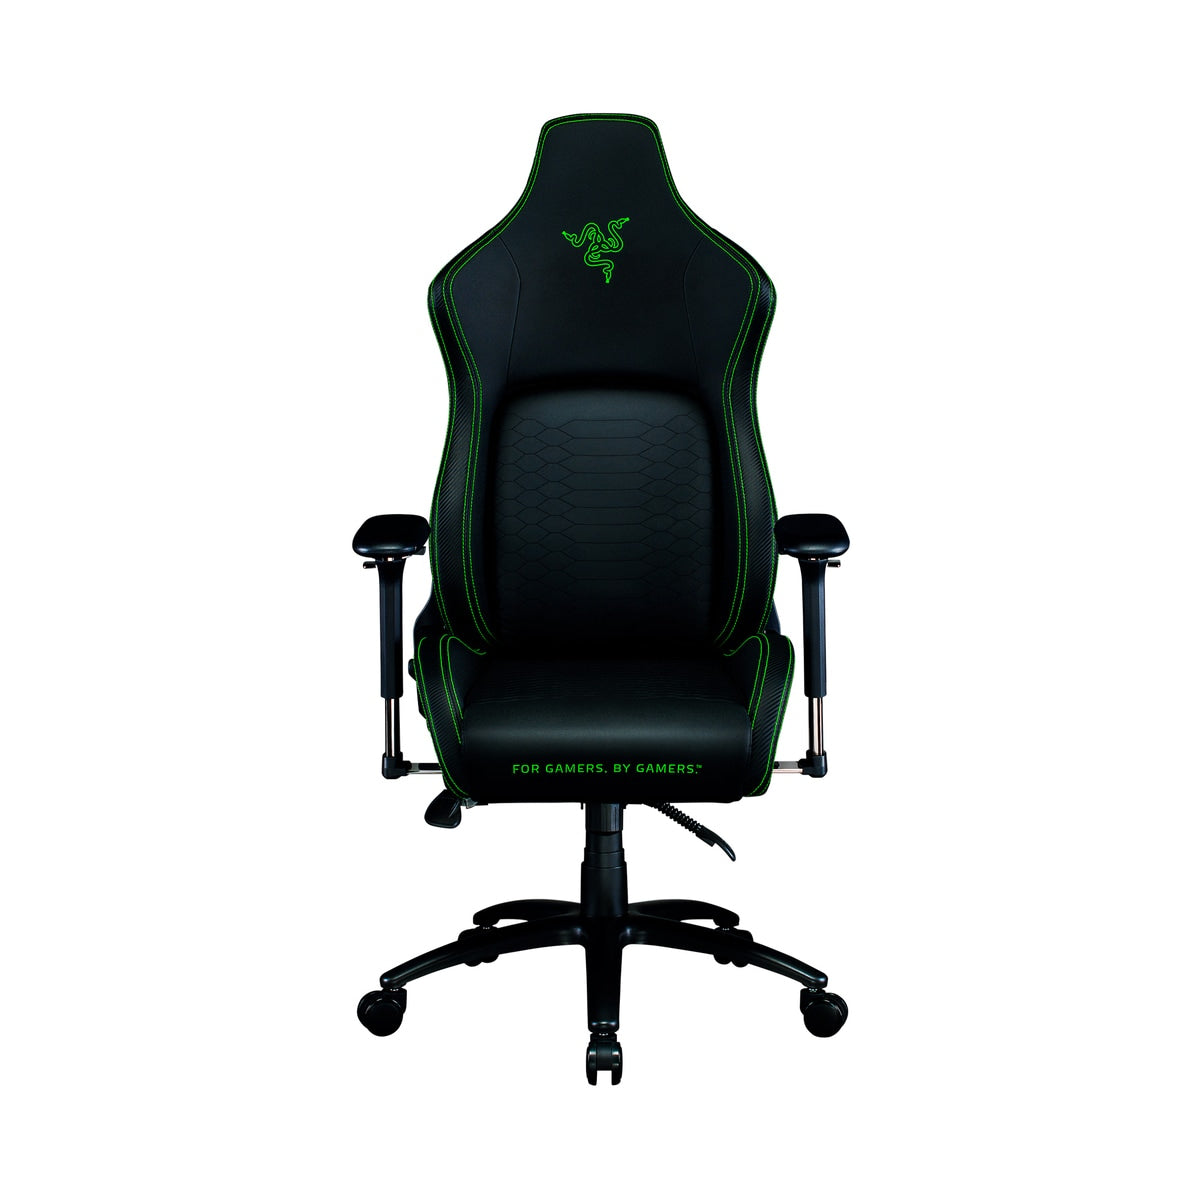 (全新推出) Razer Iskur V2 Gaming Chair with Adaptive Lumbar Support 自適應腰枕支撐系統 (Black/Green/Grey)